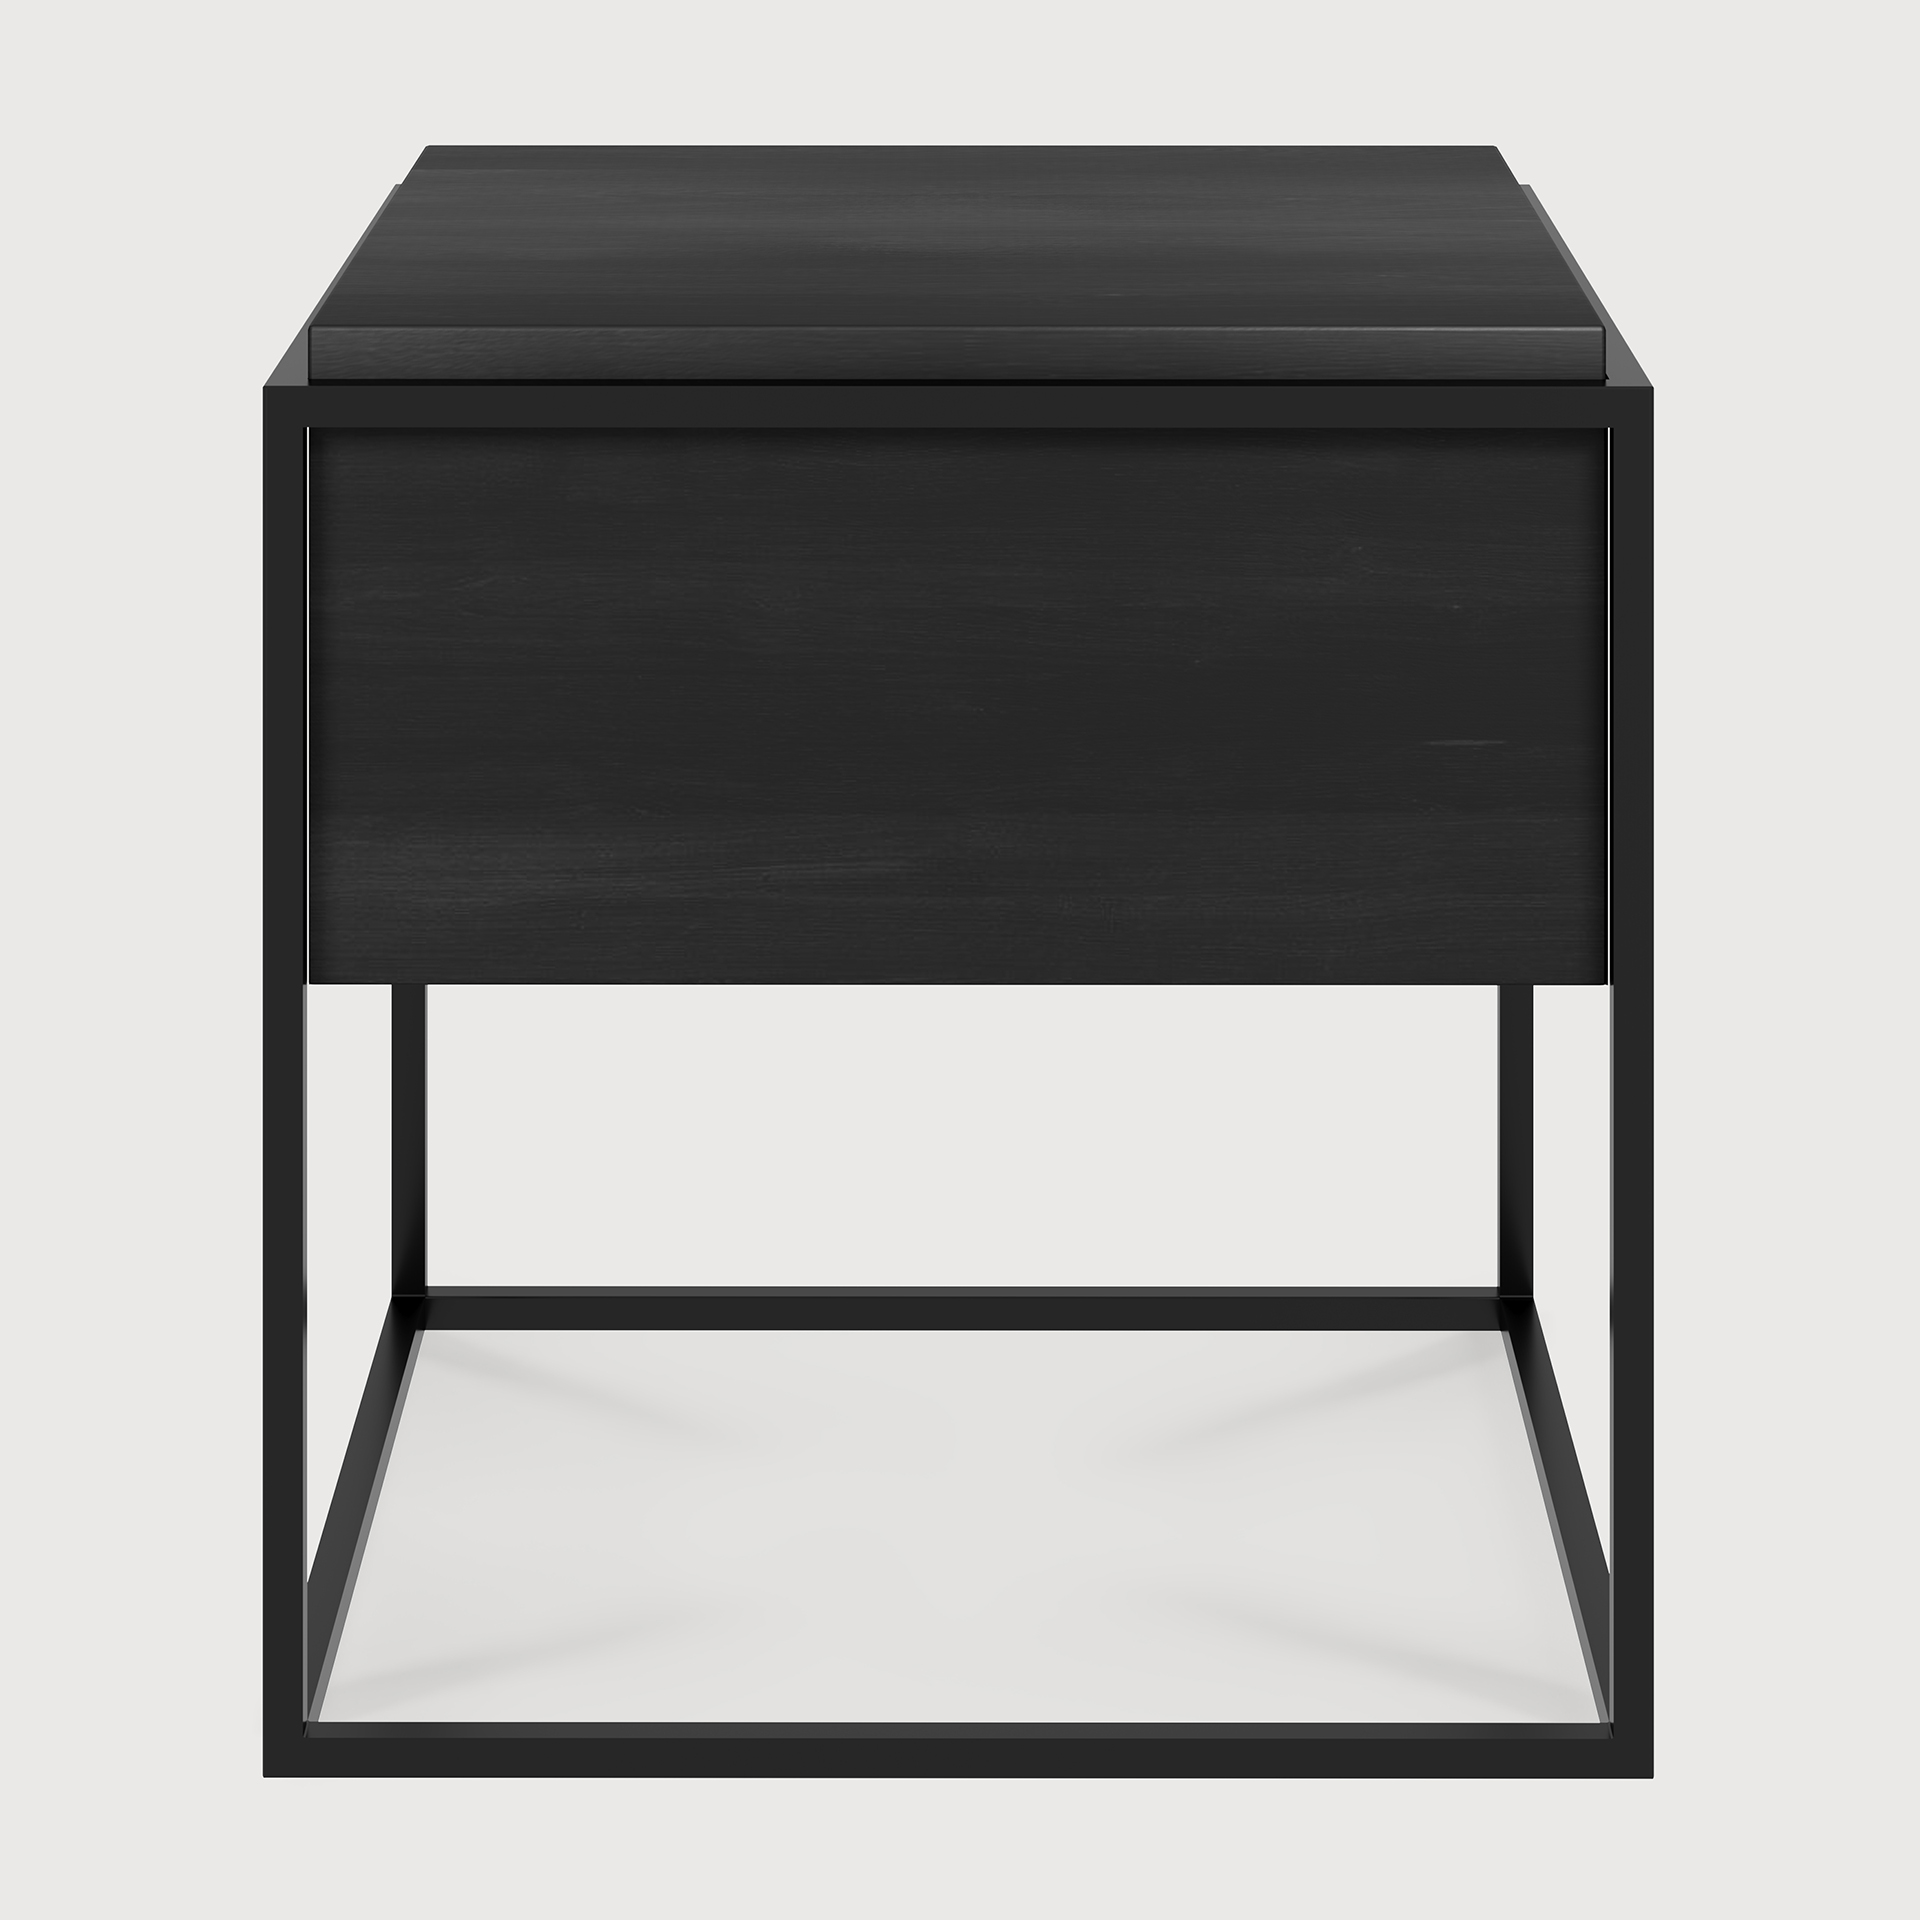 [26870*] Monolit black bedside table - 1 drawer - black metal 